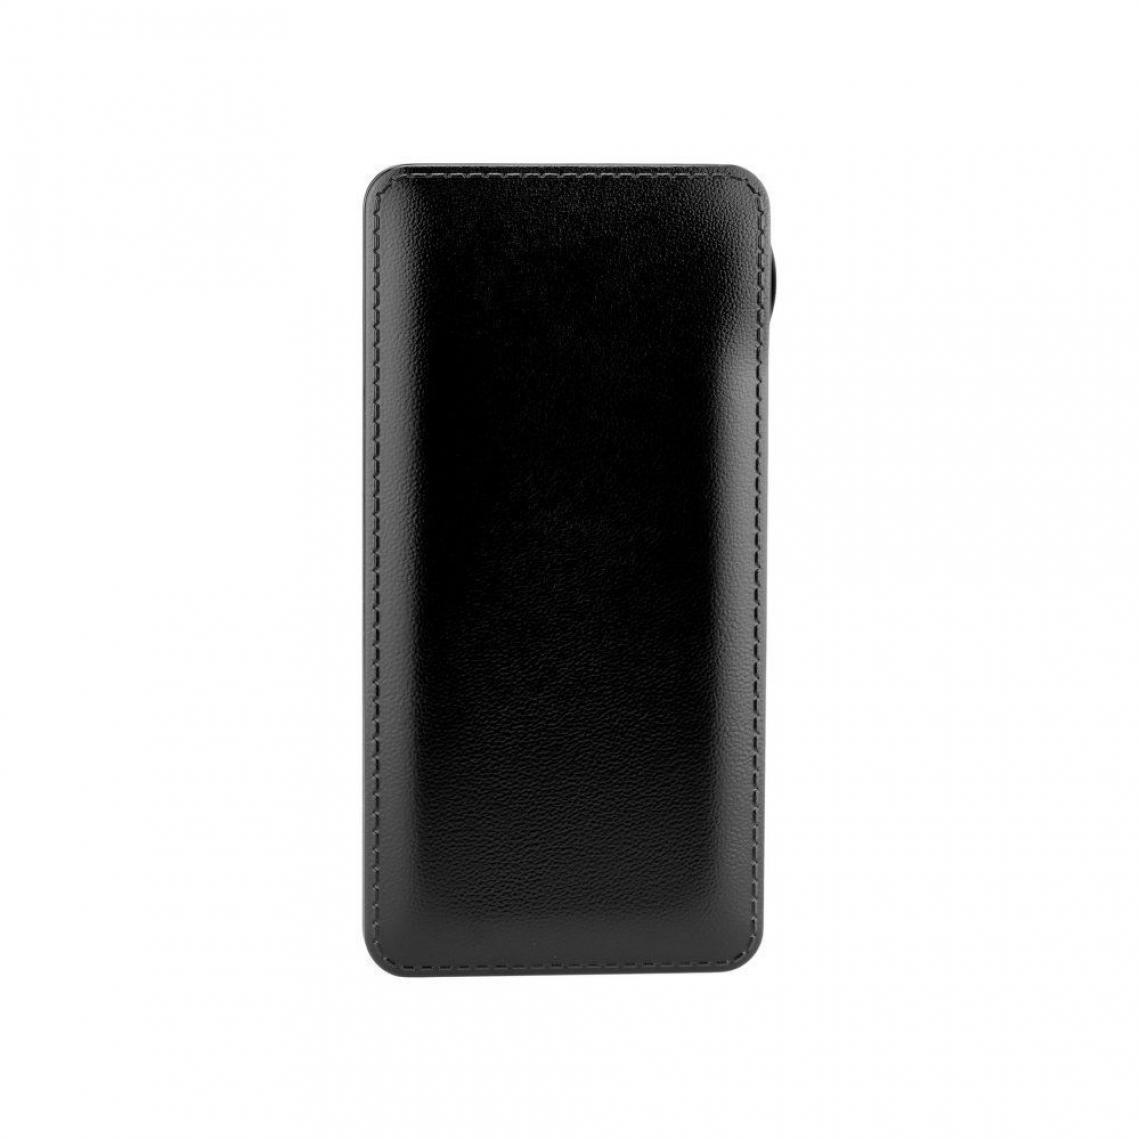 Ozzzo - Chargeur batterie externe 10000mAh powerbank ozzzo noir pour Samsung Galaxy Tab Active3 - Autres accessoires smartphone